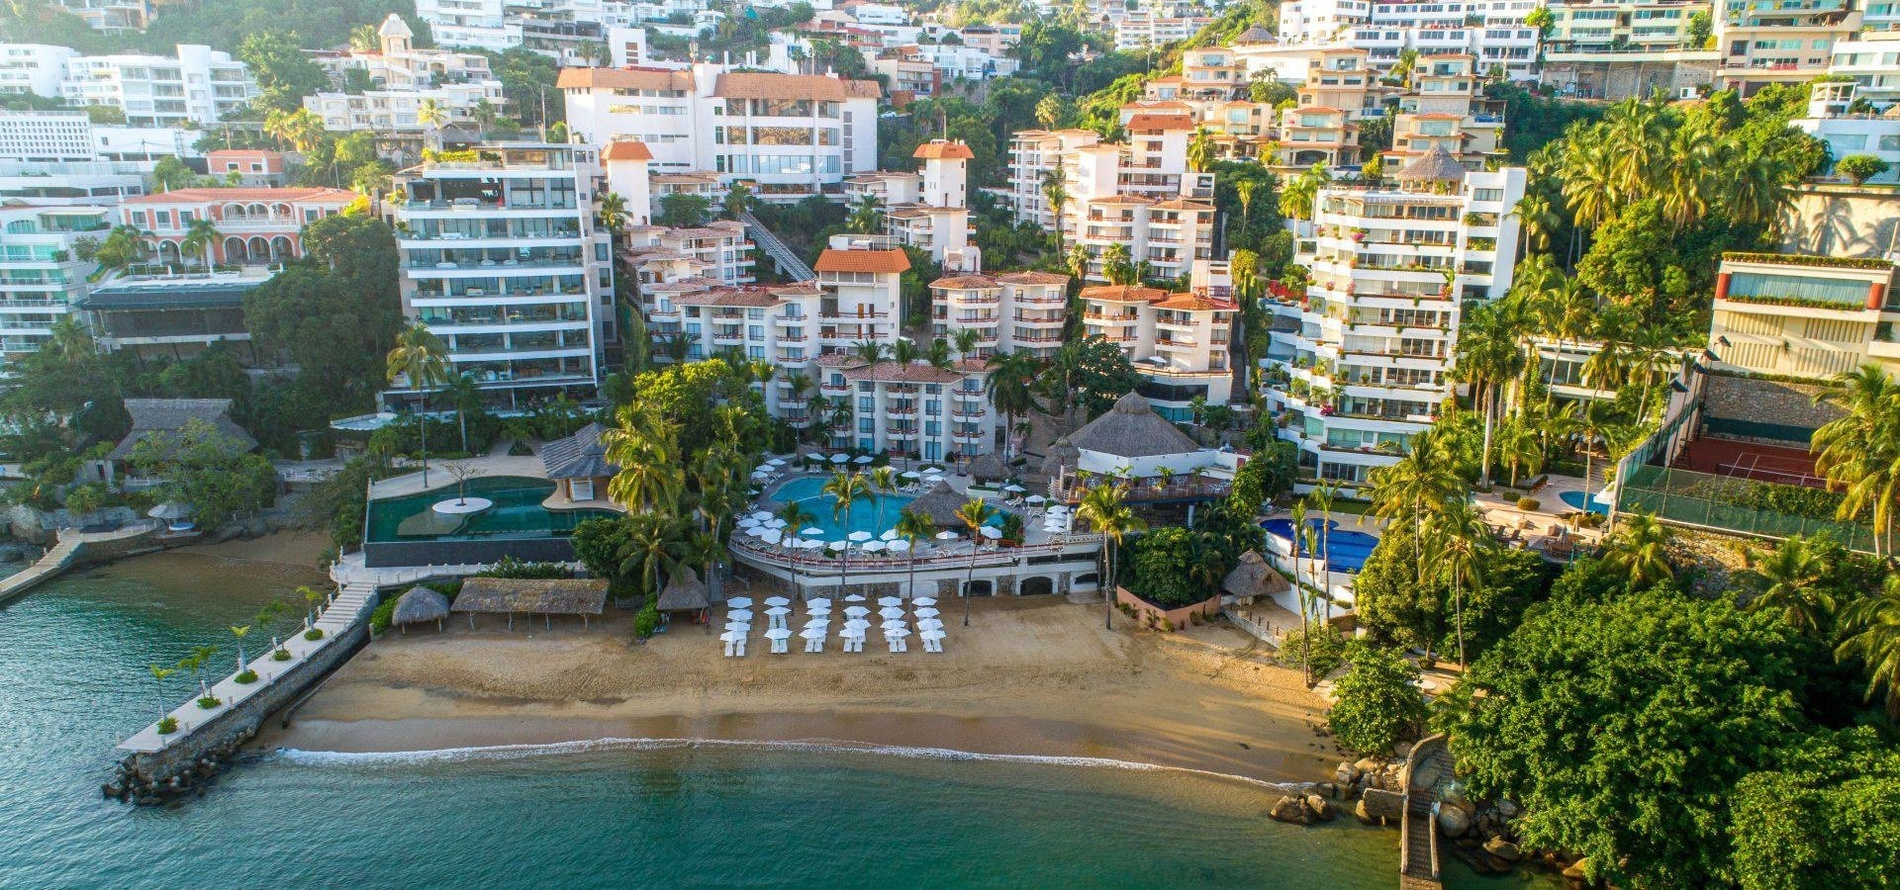 Visão geral do Park Royal Beach Acapulco Hotel, instalações, piscina e praia